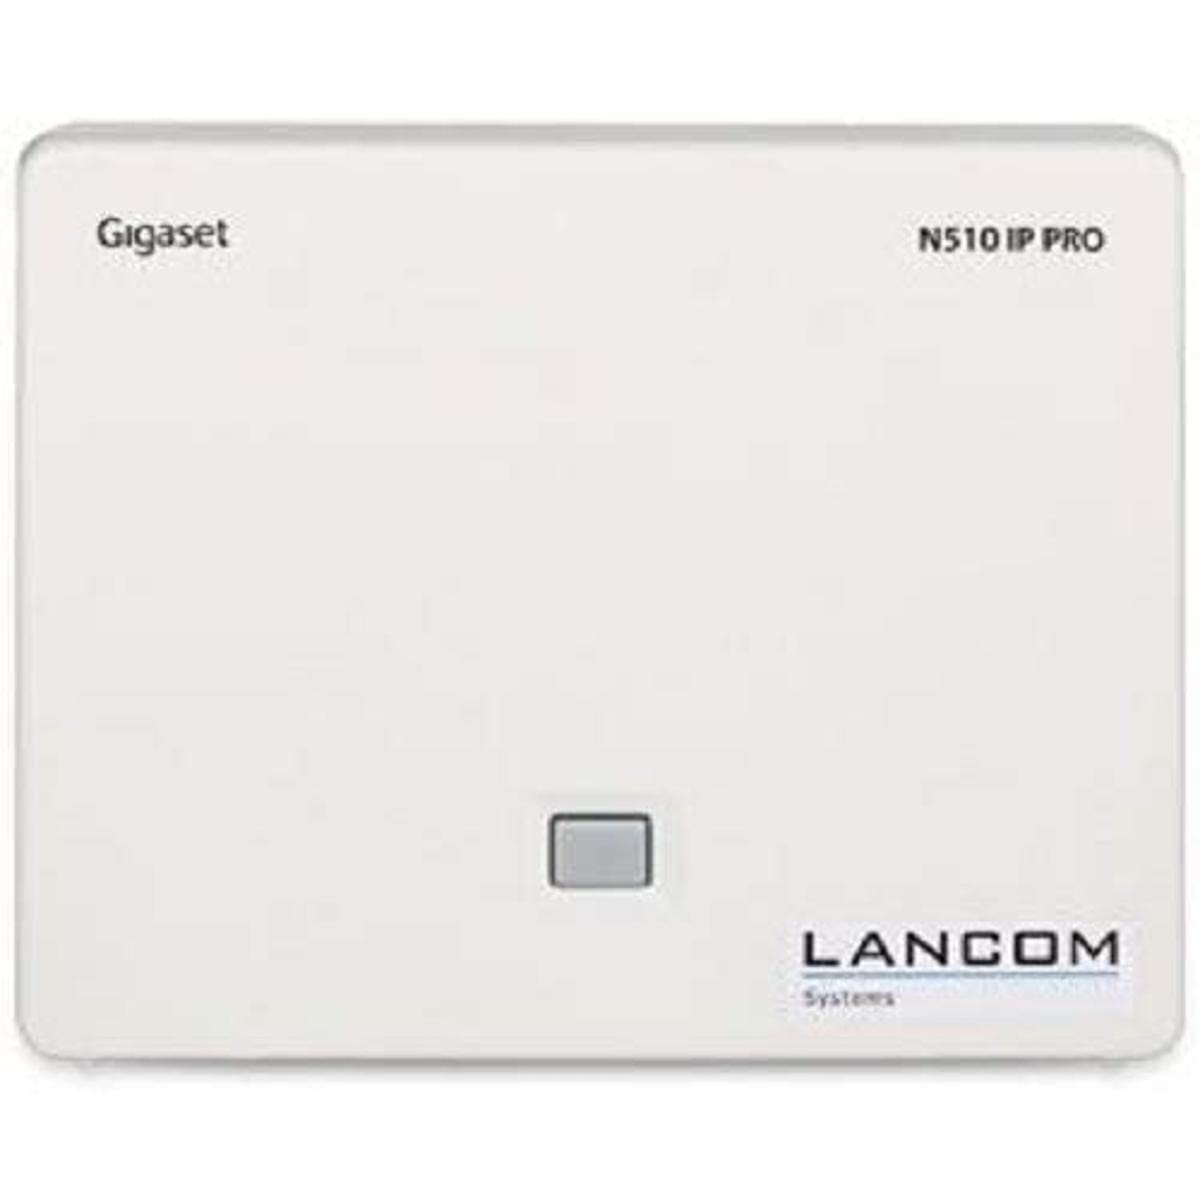 LANCOM DECT 510 IP (EU), DECT-Basisstation zur Nutzung von bis zu 6 DECT-Mobilteilen, Netzwerkintegration und Konfiguration über LANCOM VoIP-Router